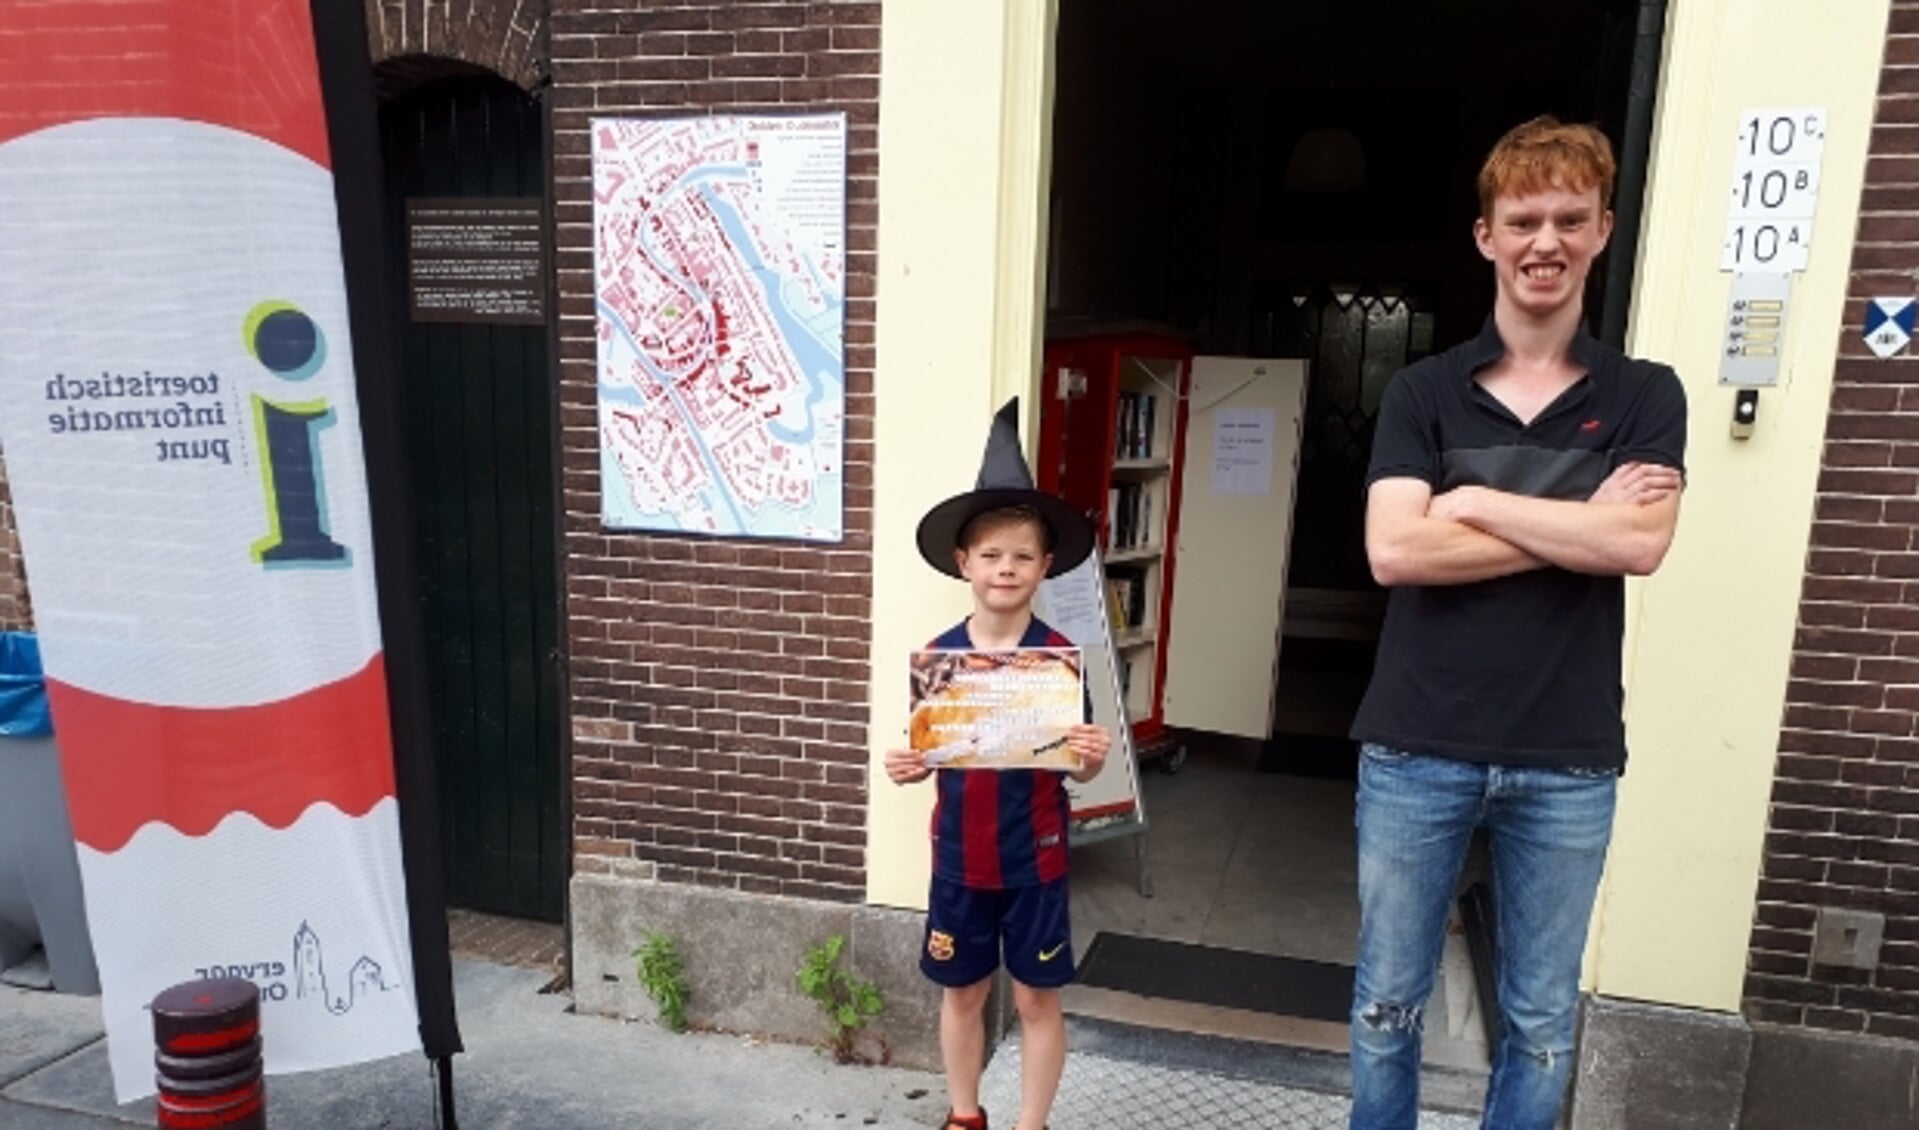 Straks lopen er vast veel kleine heksjes door de stad, zoals Boaz van 7, hier met Patrick, die de puzzeltocht ook liep. (Foto: Margreet Nagtegaal)